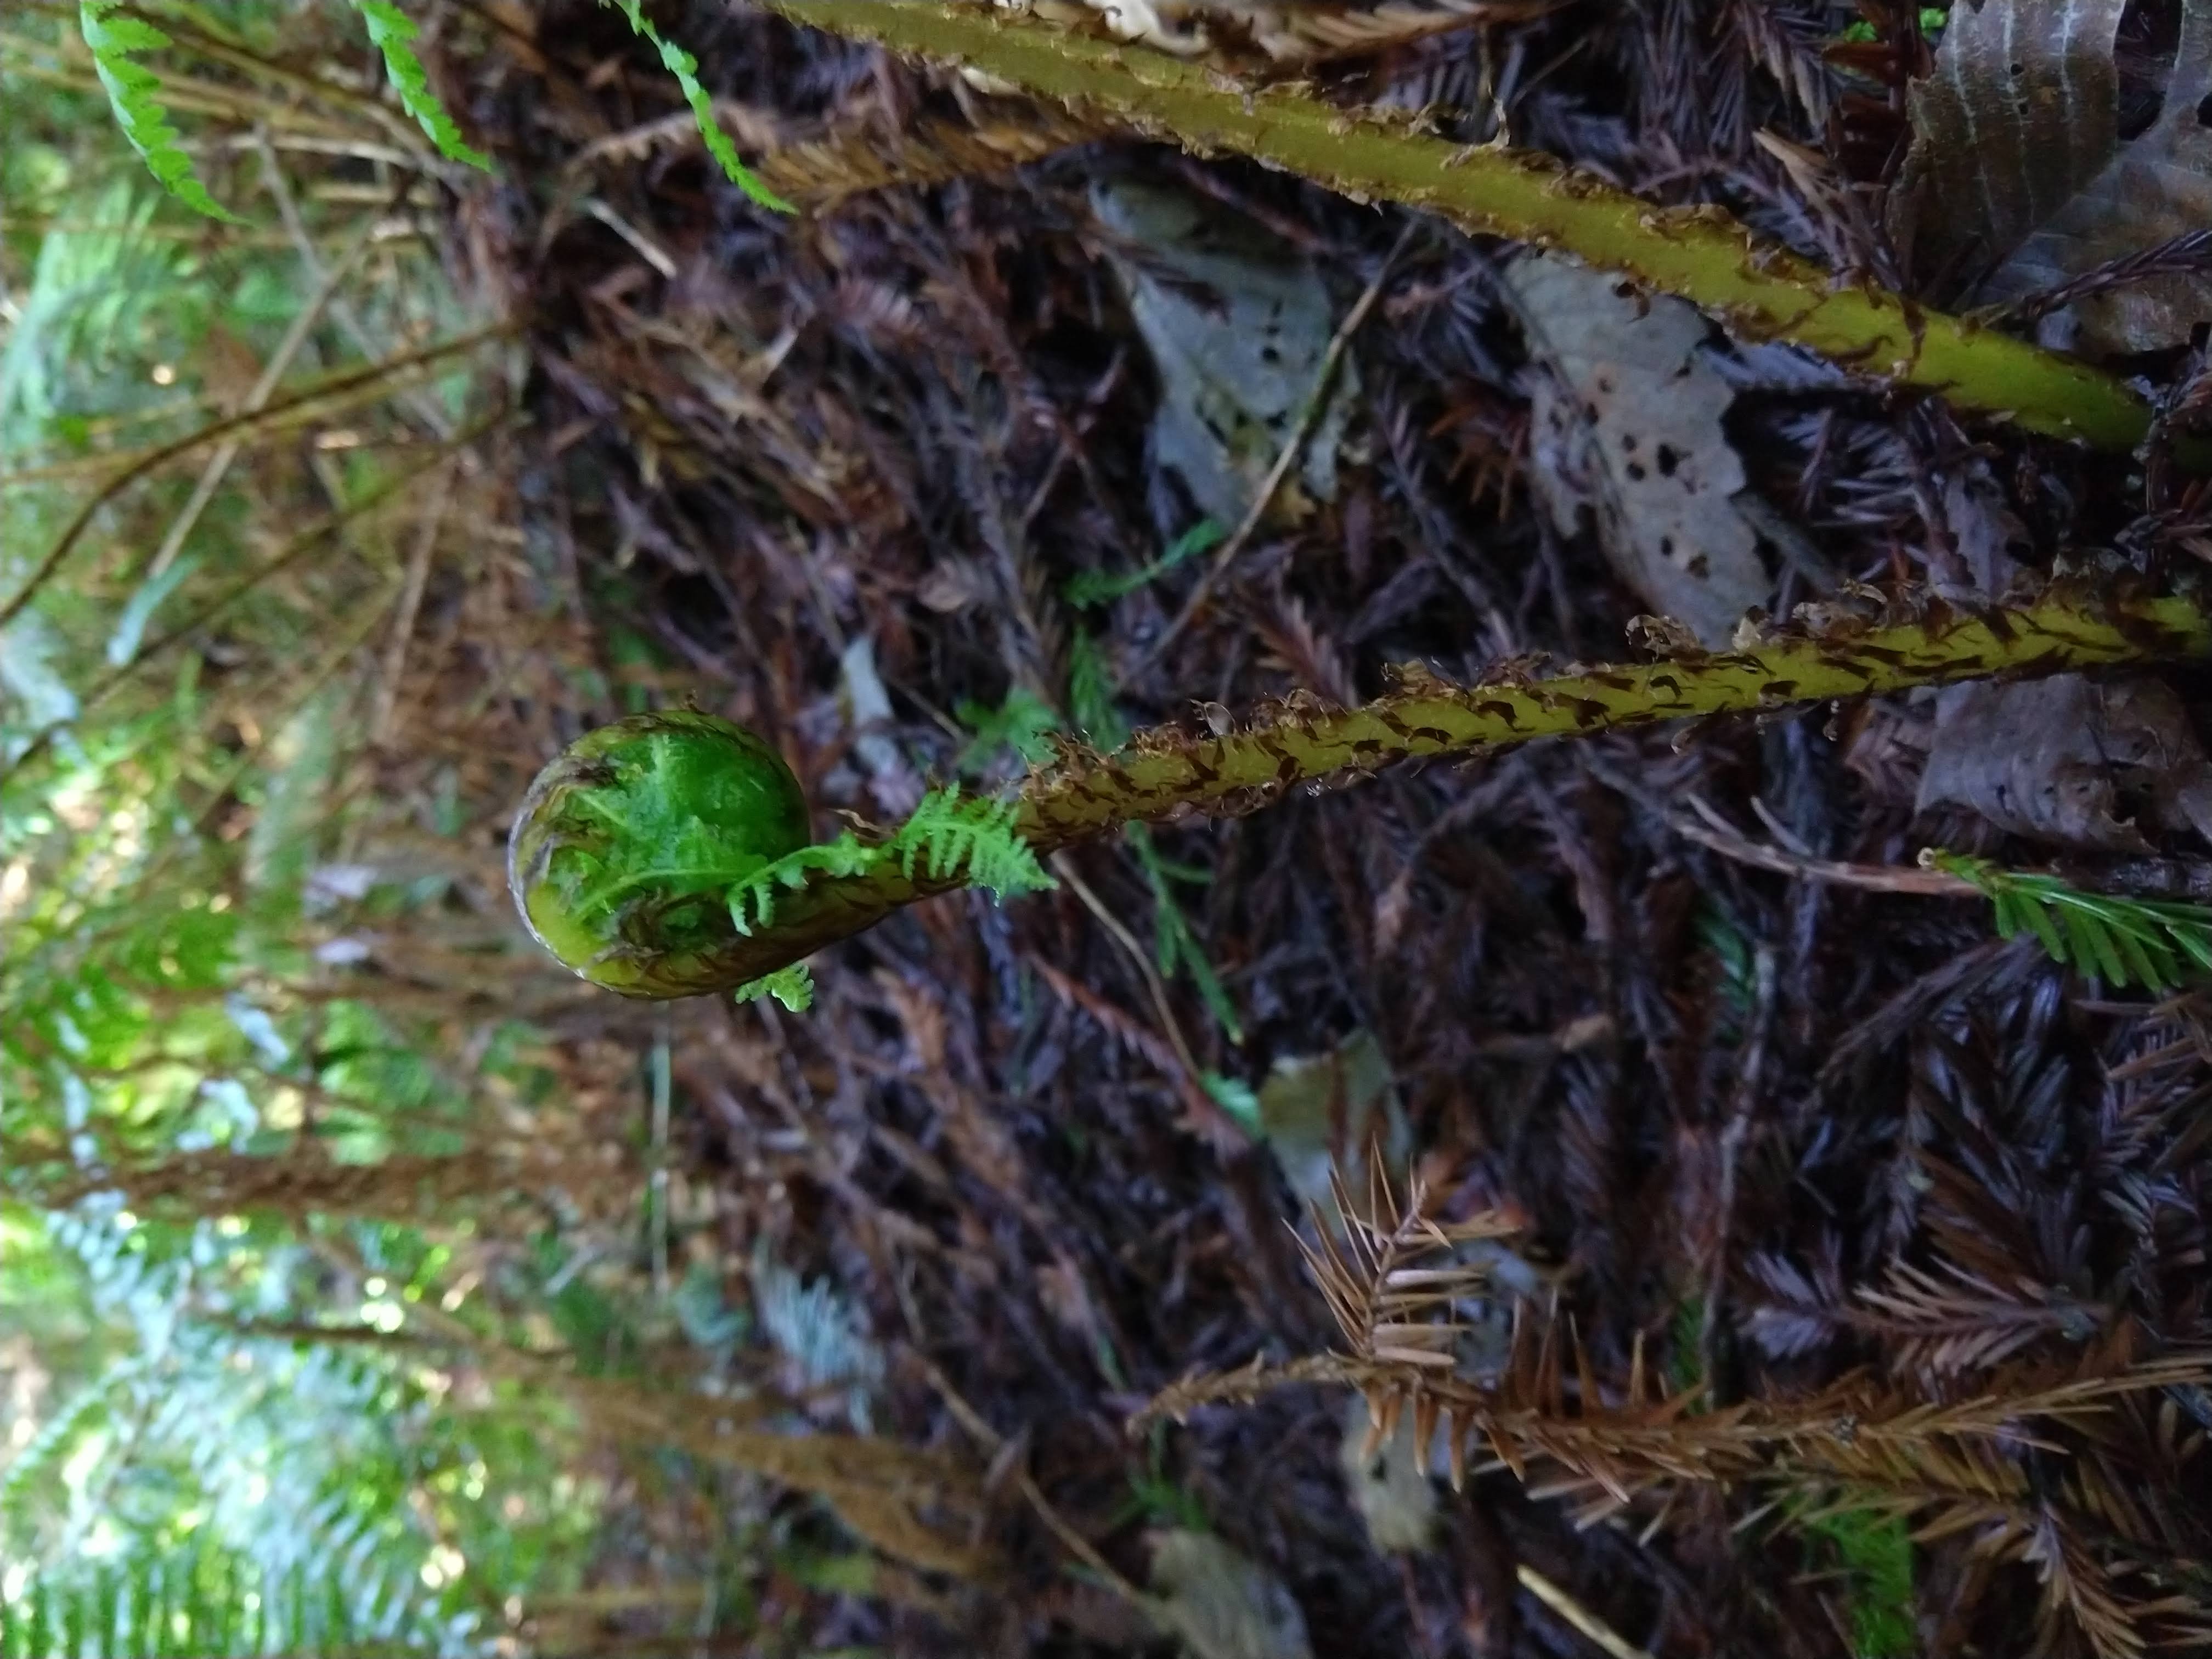 The fuzzy fiddlehead of a sword fern frond